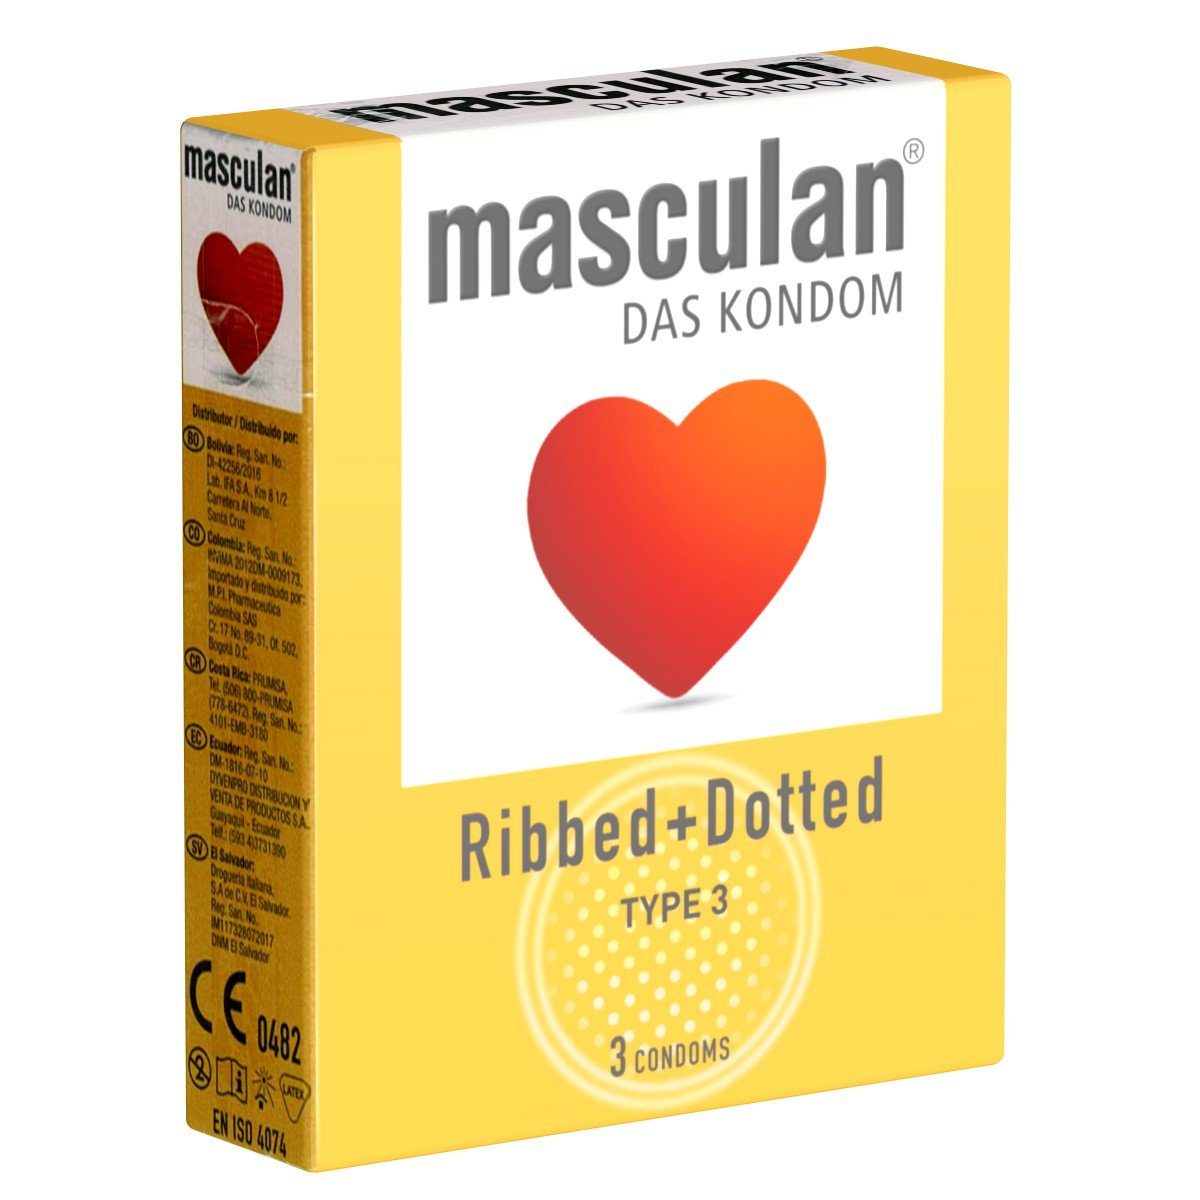 (ribbed/dotted) für St., mehr Kondome Typ Kondome gerippt-genoppte 3 Packung Gefühl Masculan mit, 3